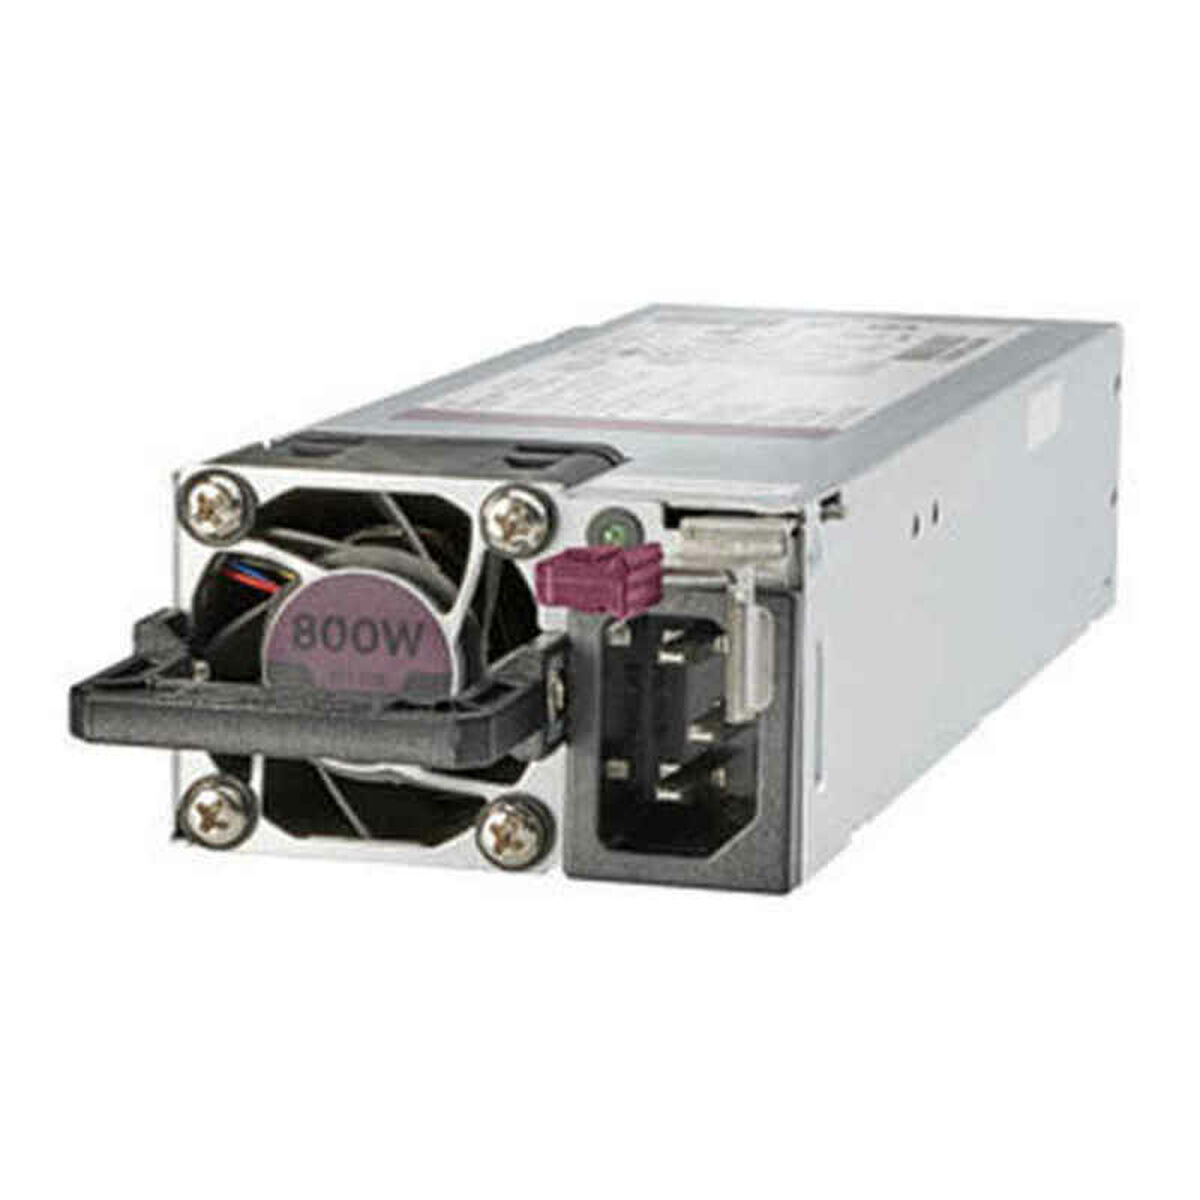 Hot-Plug-fähig, Netzteile HPE Flex Platinum-Netzteilkit halogenarm Watt 800 (865414-B21) mit 800W, HPE Slot